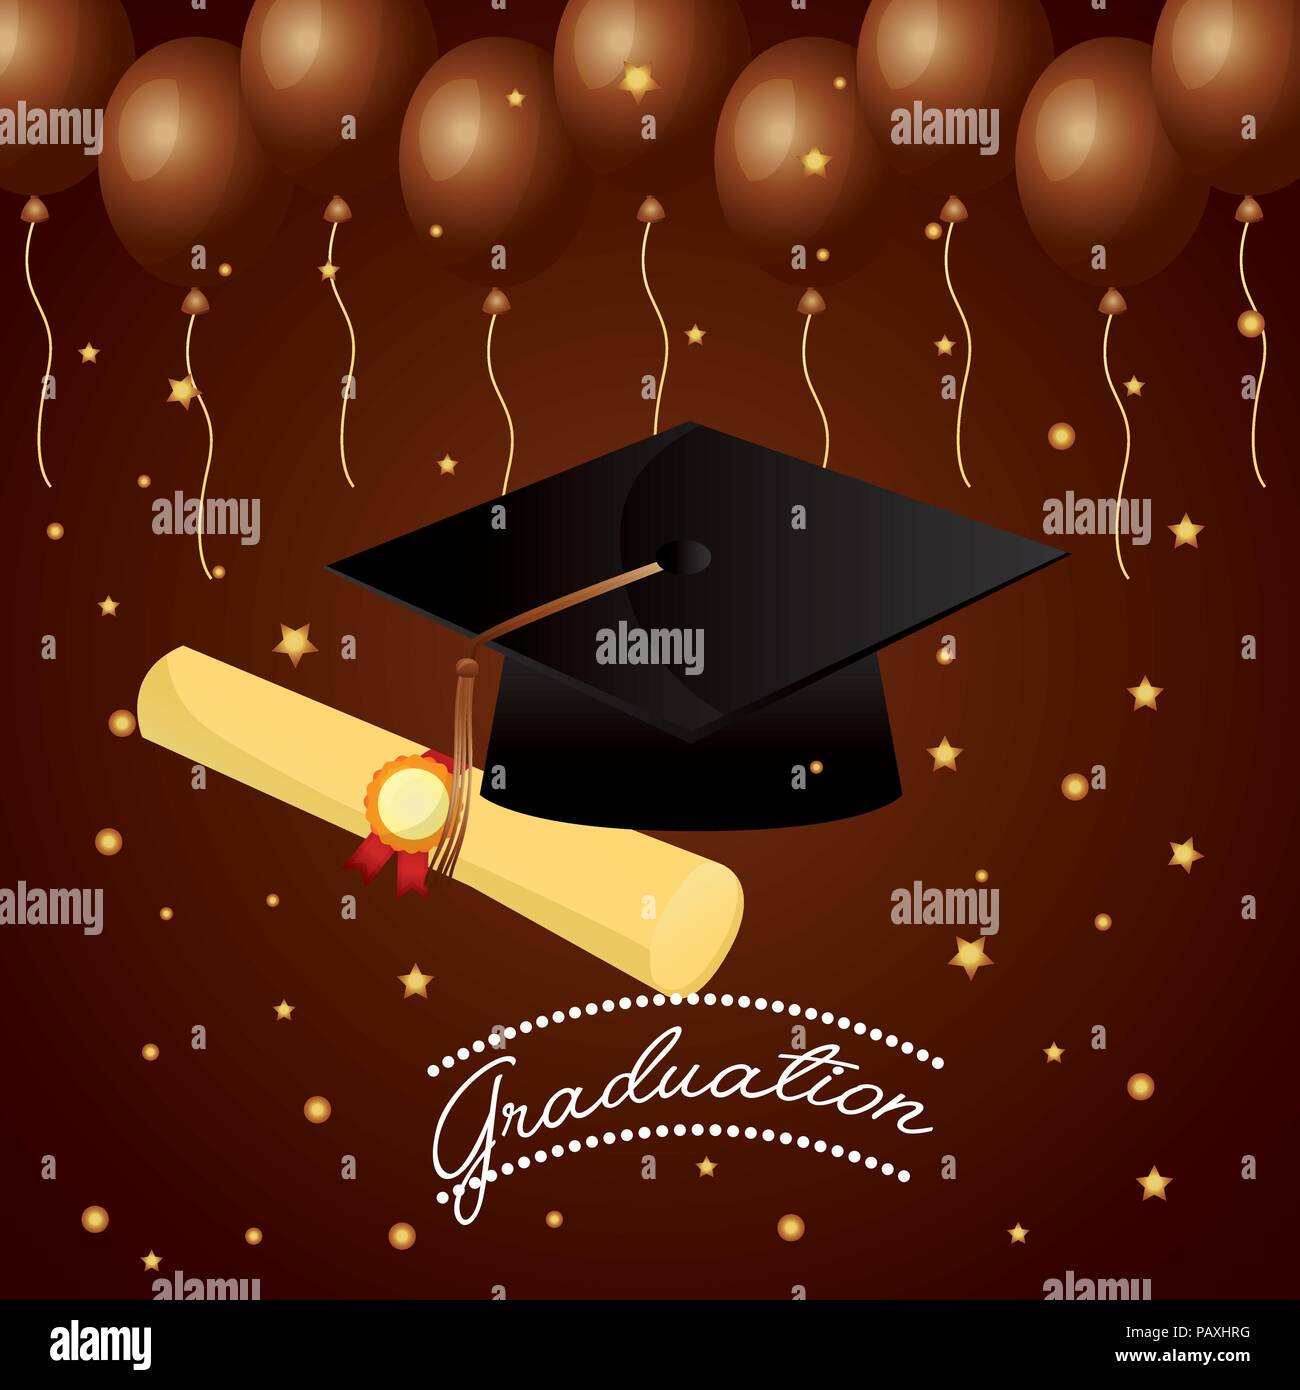 Congratulazioni graduazione hat certificate e stelle palloncini sfondo marrone illustrazione vettoriale Illustrazione Vettoriale